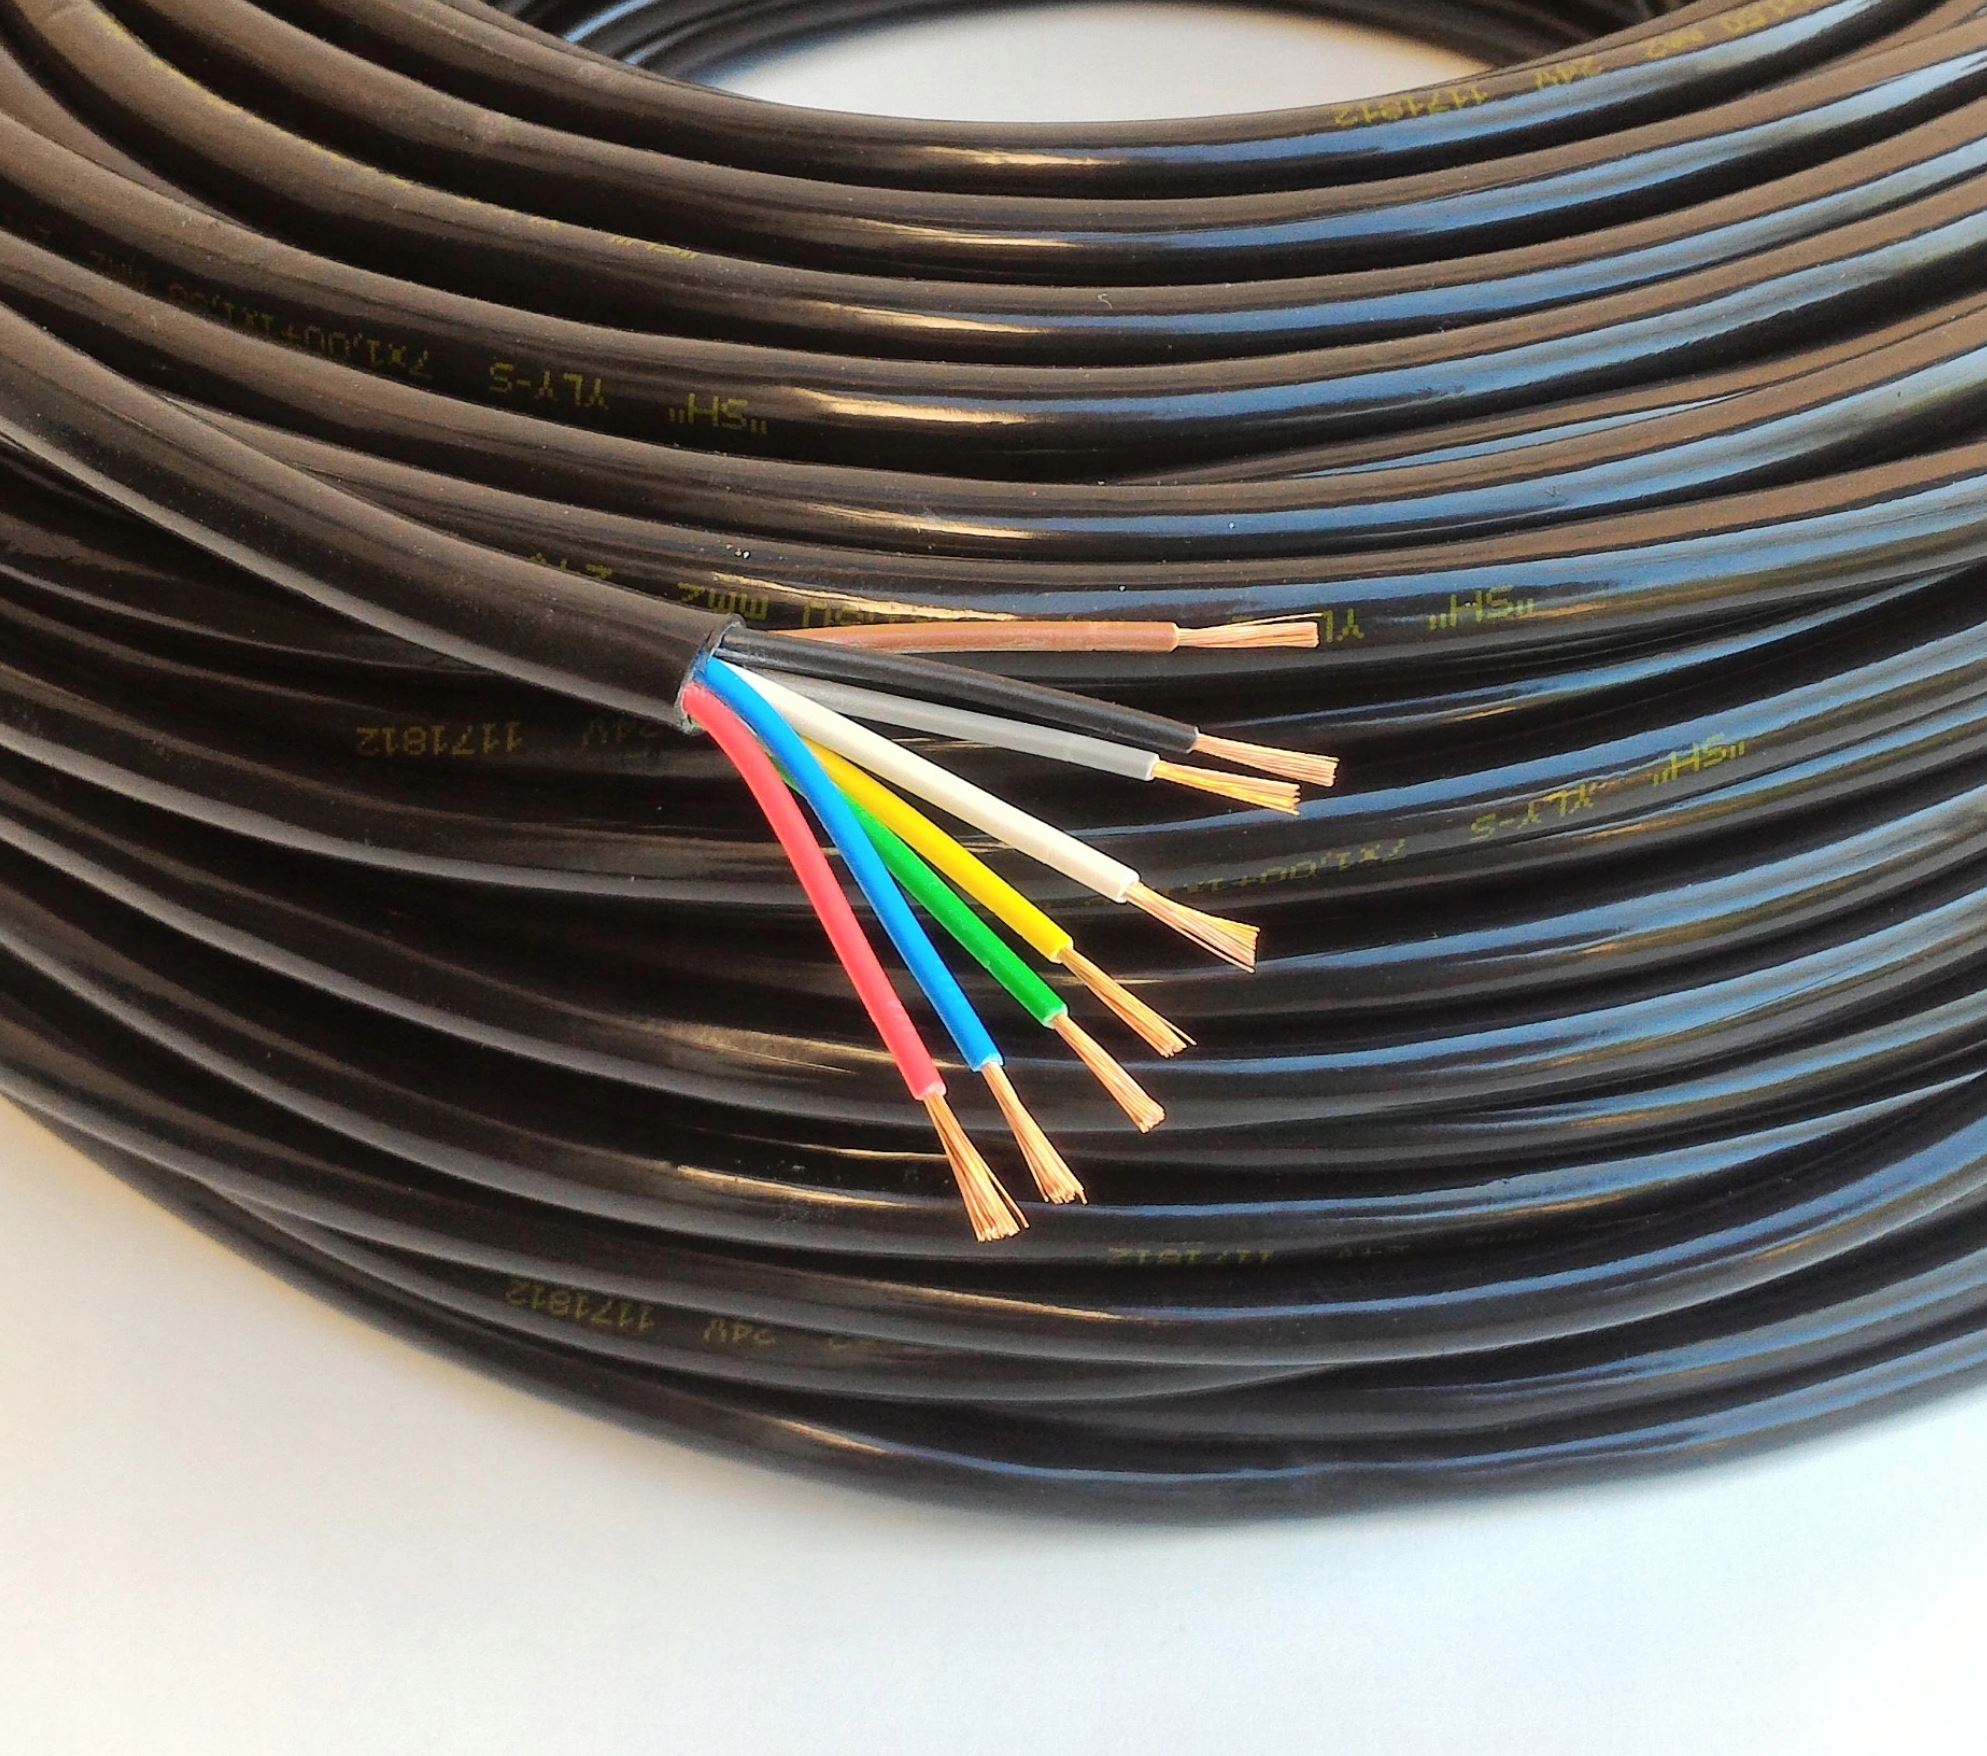 15 жил кабель. Cable VVG 3x1.5mm2. Кабель гибкий 8x1 mm2. Кабель 6х1.5 гибкий многожильный. Провод 6х1.5.